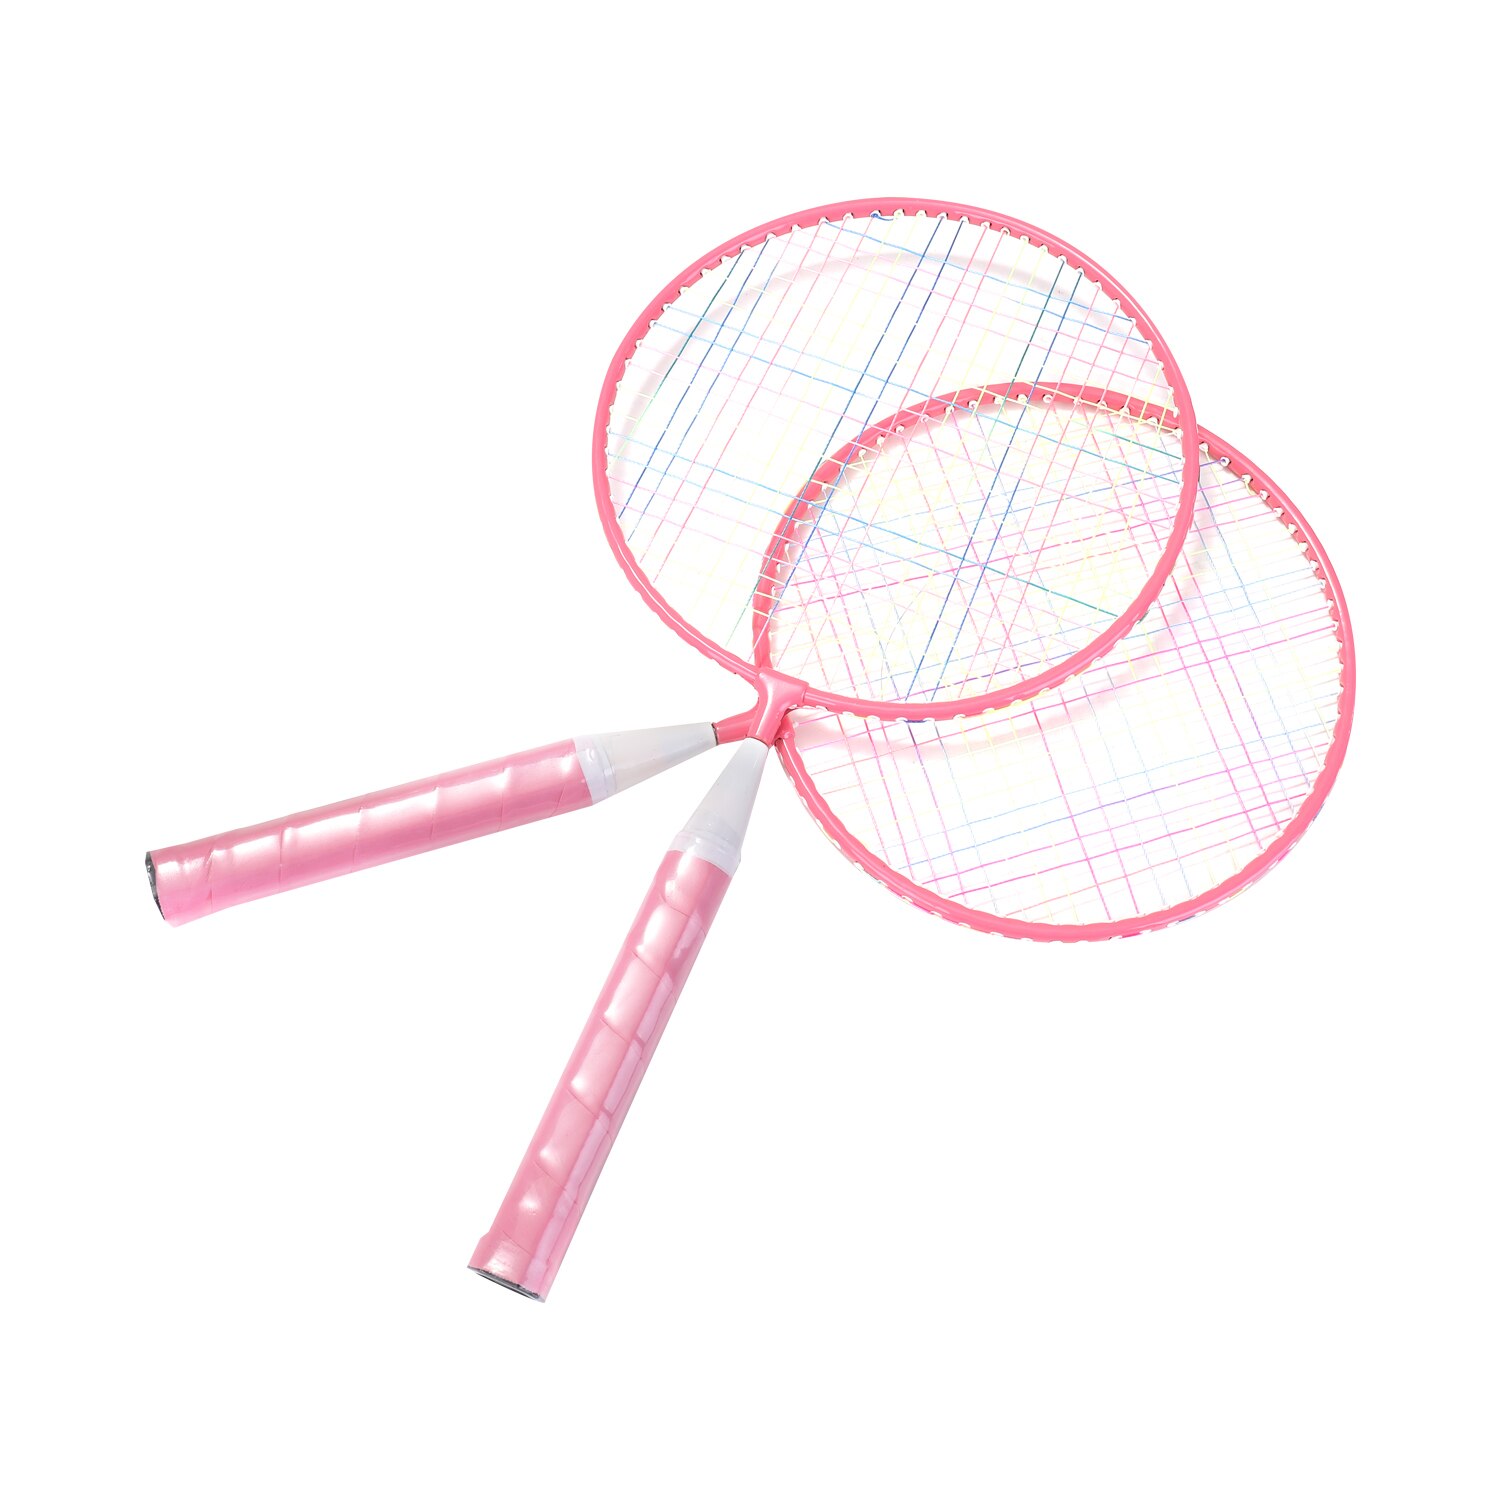 Badmintonketcher til børn 1 par, nylonlegeret praktisk racketsæt til børn indendørs / udendørs sportsspil